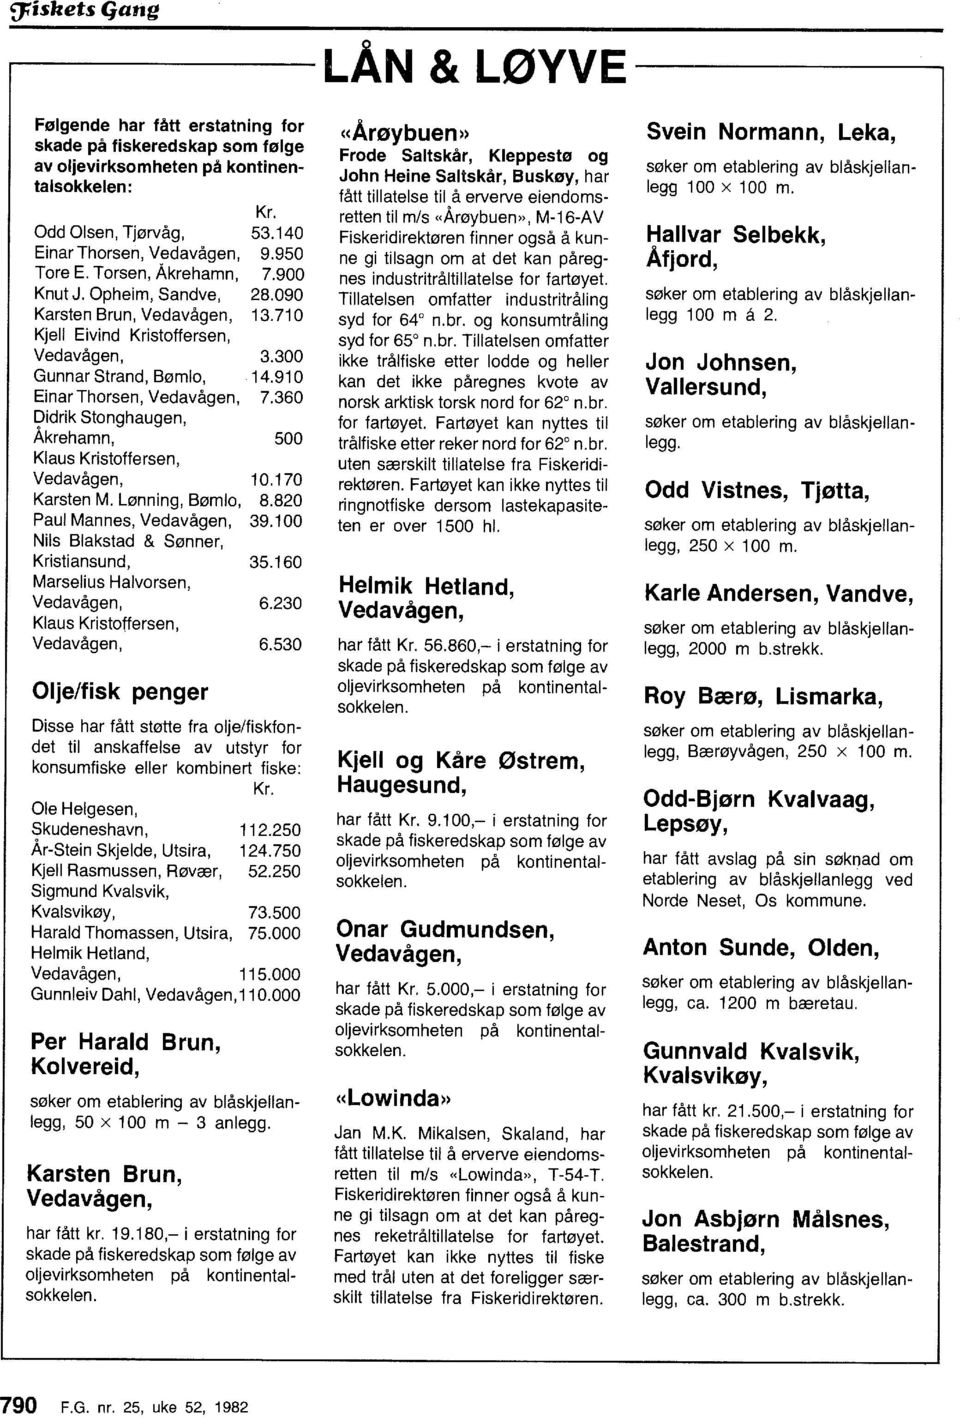 91 O Einar Thrsen, Vedavågen, 7.360 Didrik Stnghaugen, Åkrehamn, Klaus Kristffersen, 500 Vedavågen, 10.170 Karsten M. Lønning, Bøml, 8.820 Paul Mannes, Vedavågen, 39.